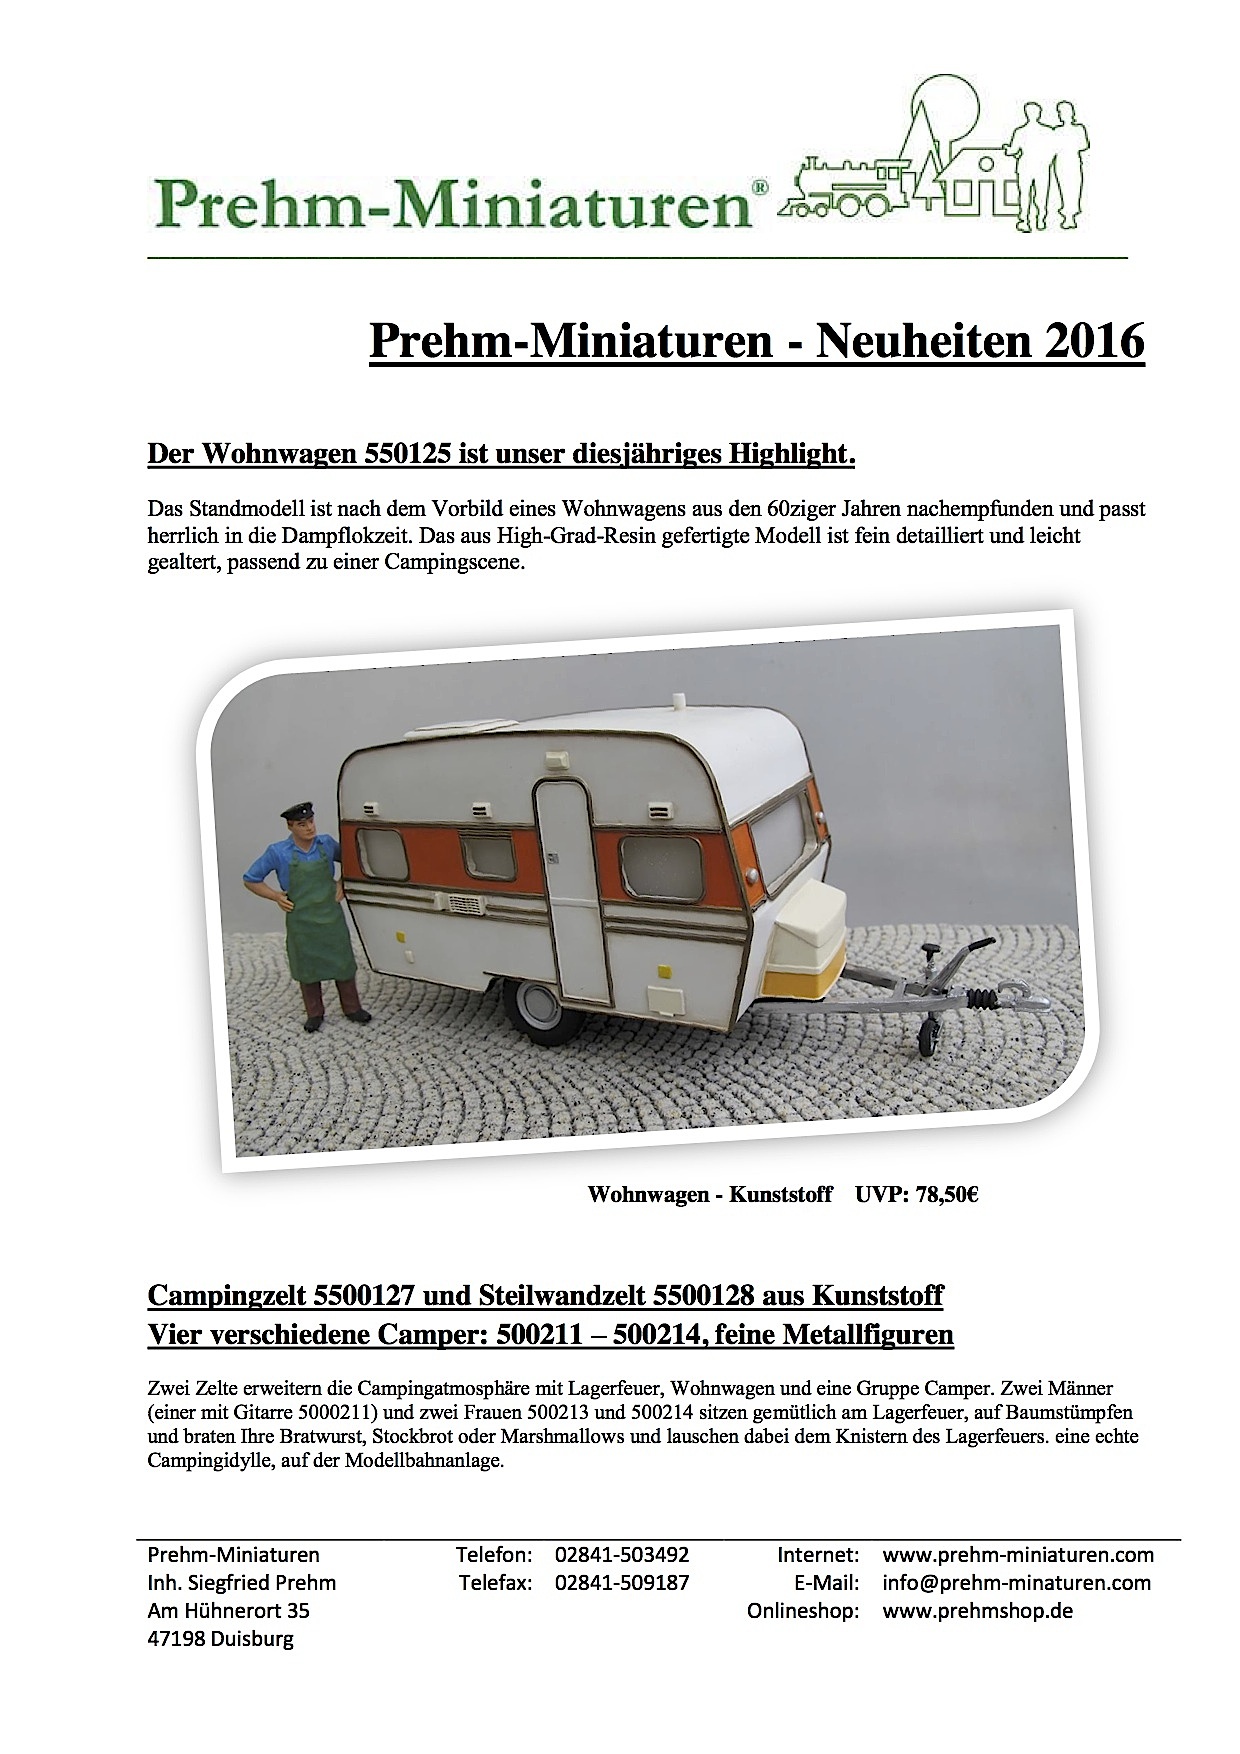 Prehm Miniaturen Neuheiten (New Items) 2016